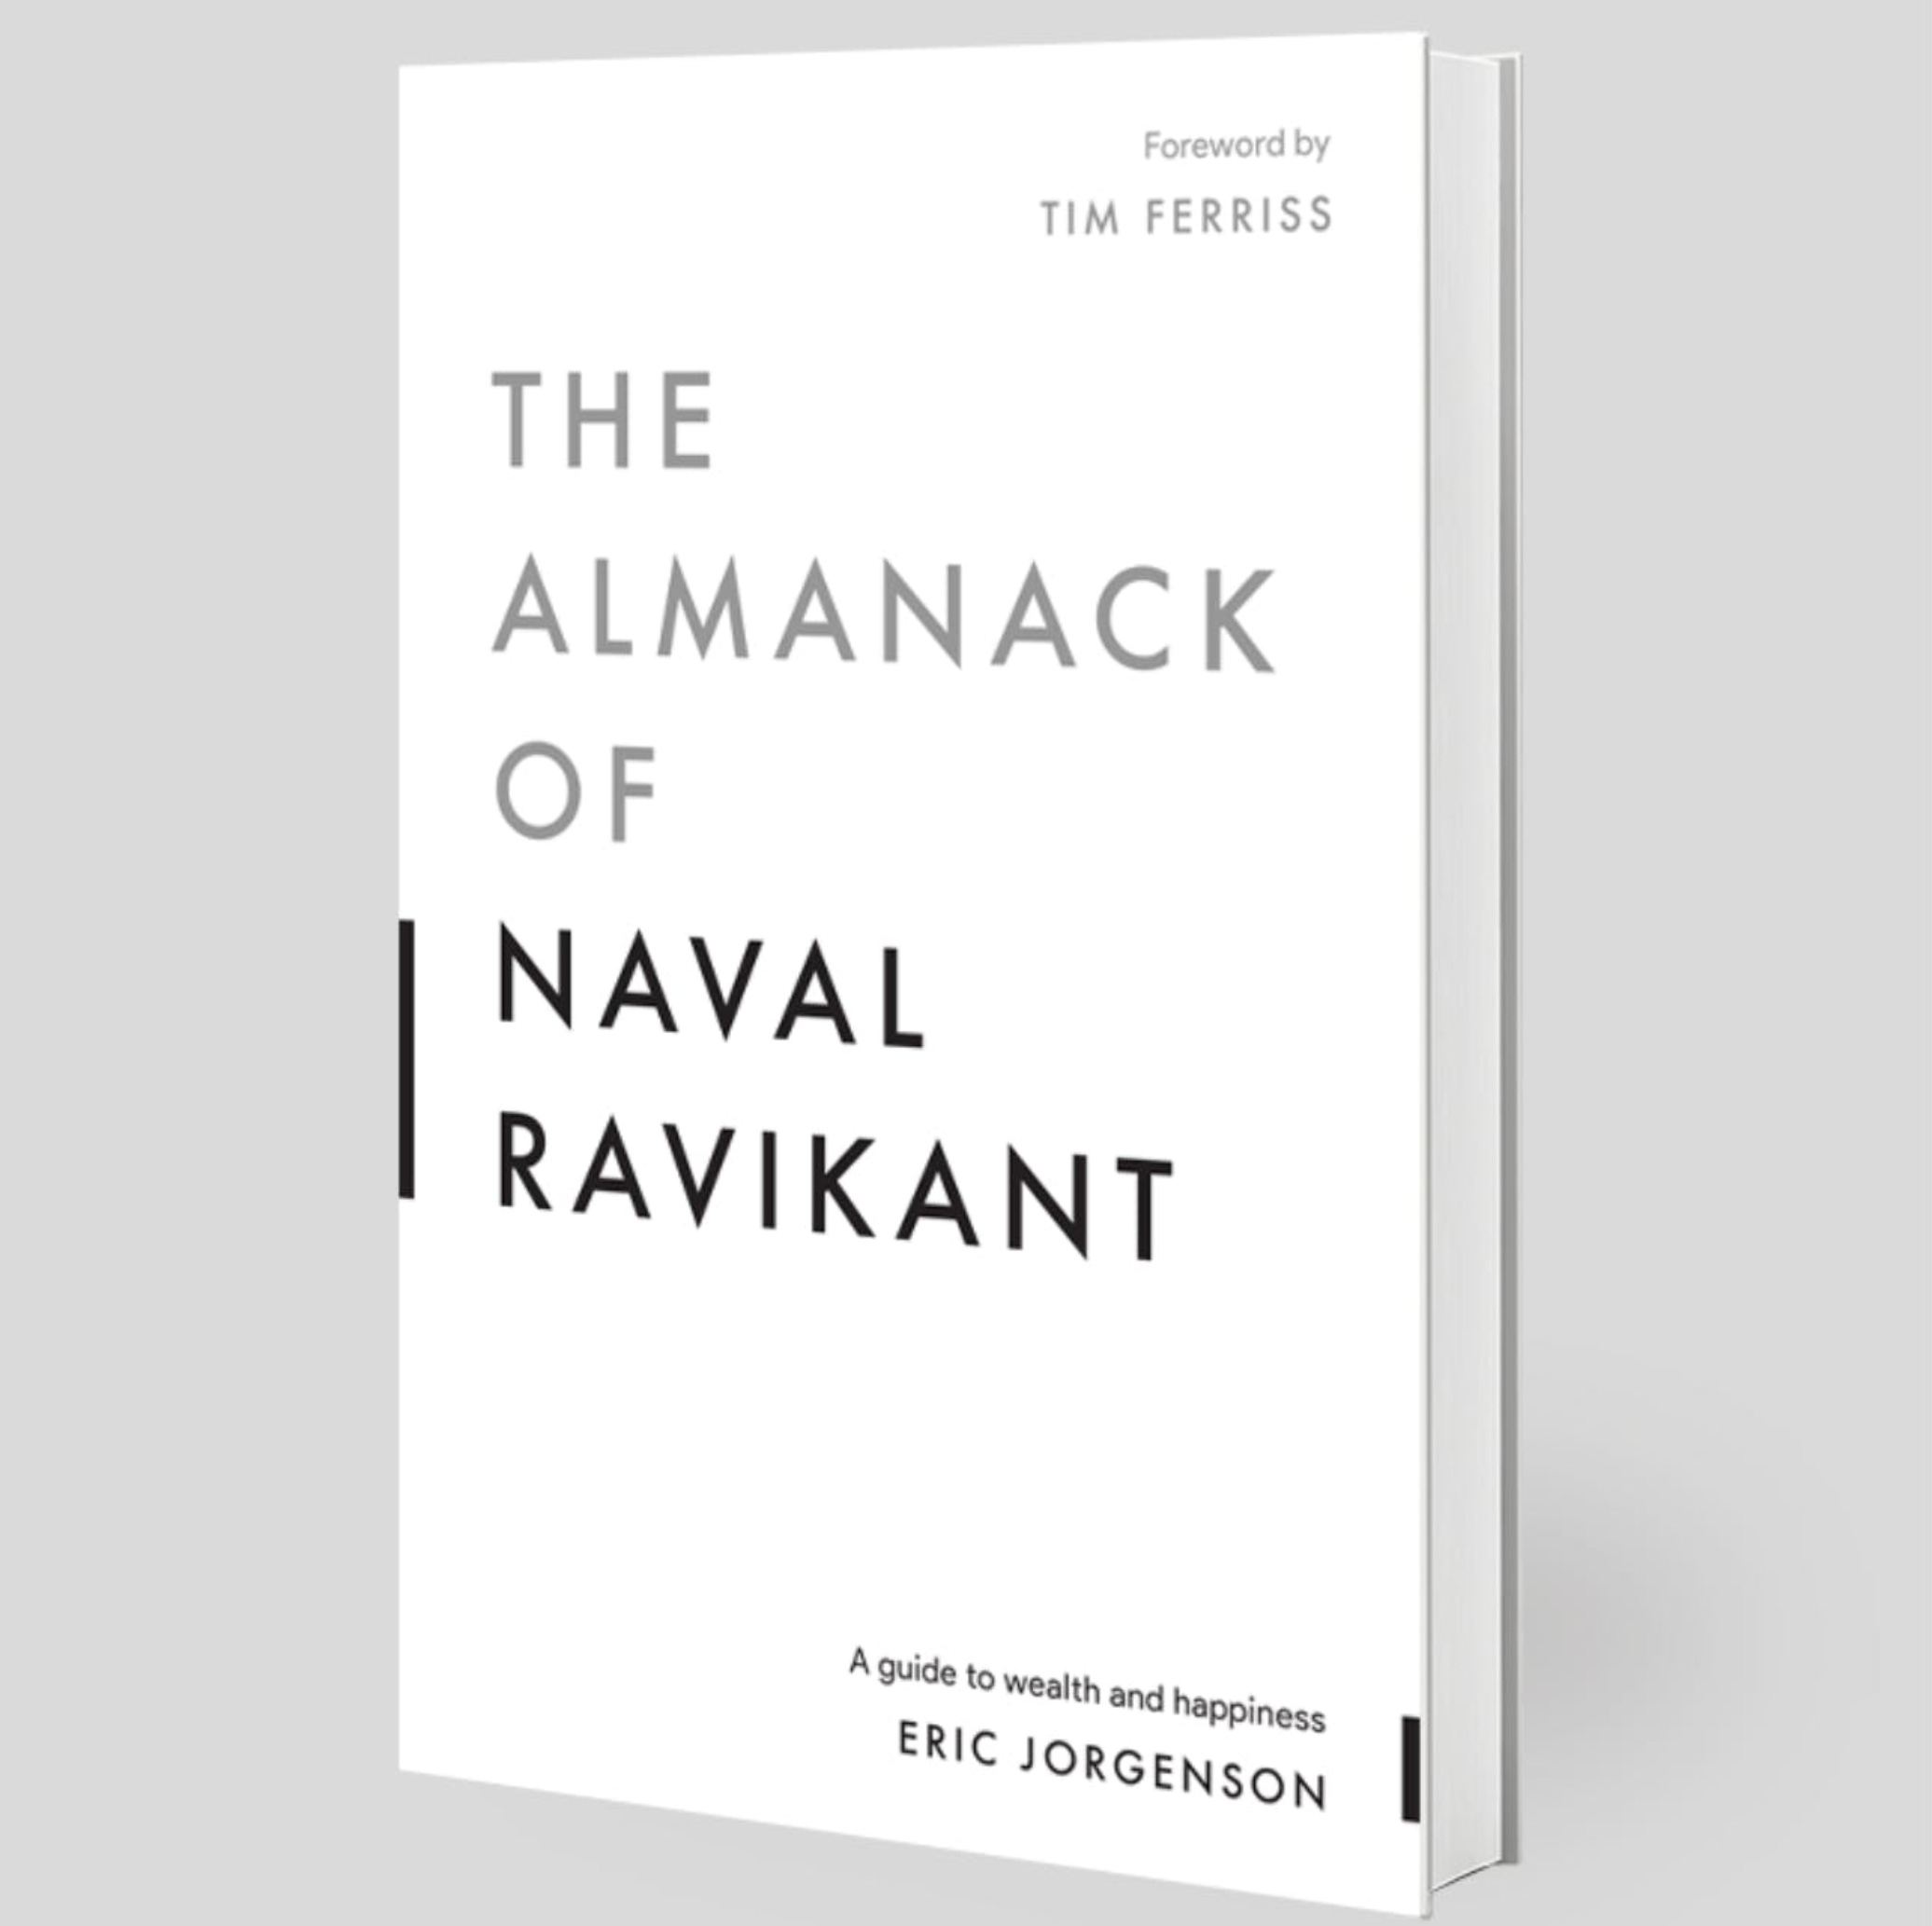 The Almanack of Naval Ravikant - by Chris Franco